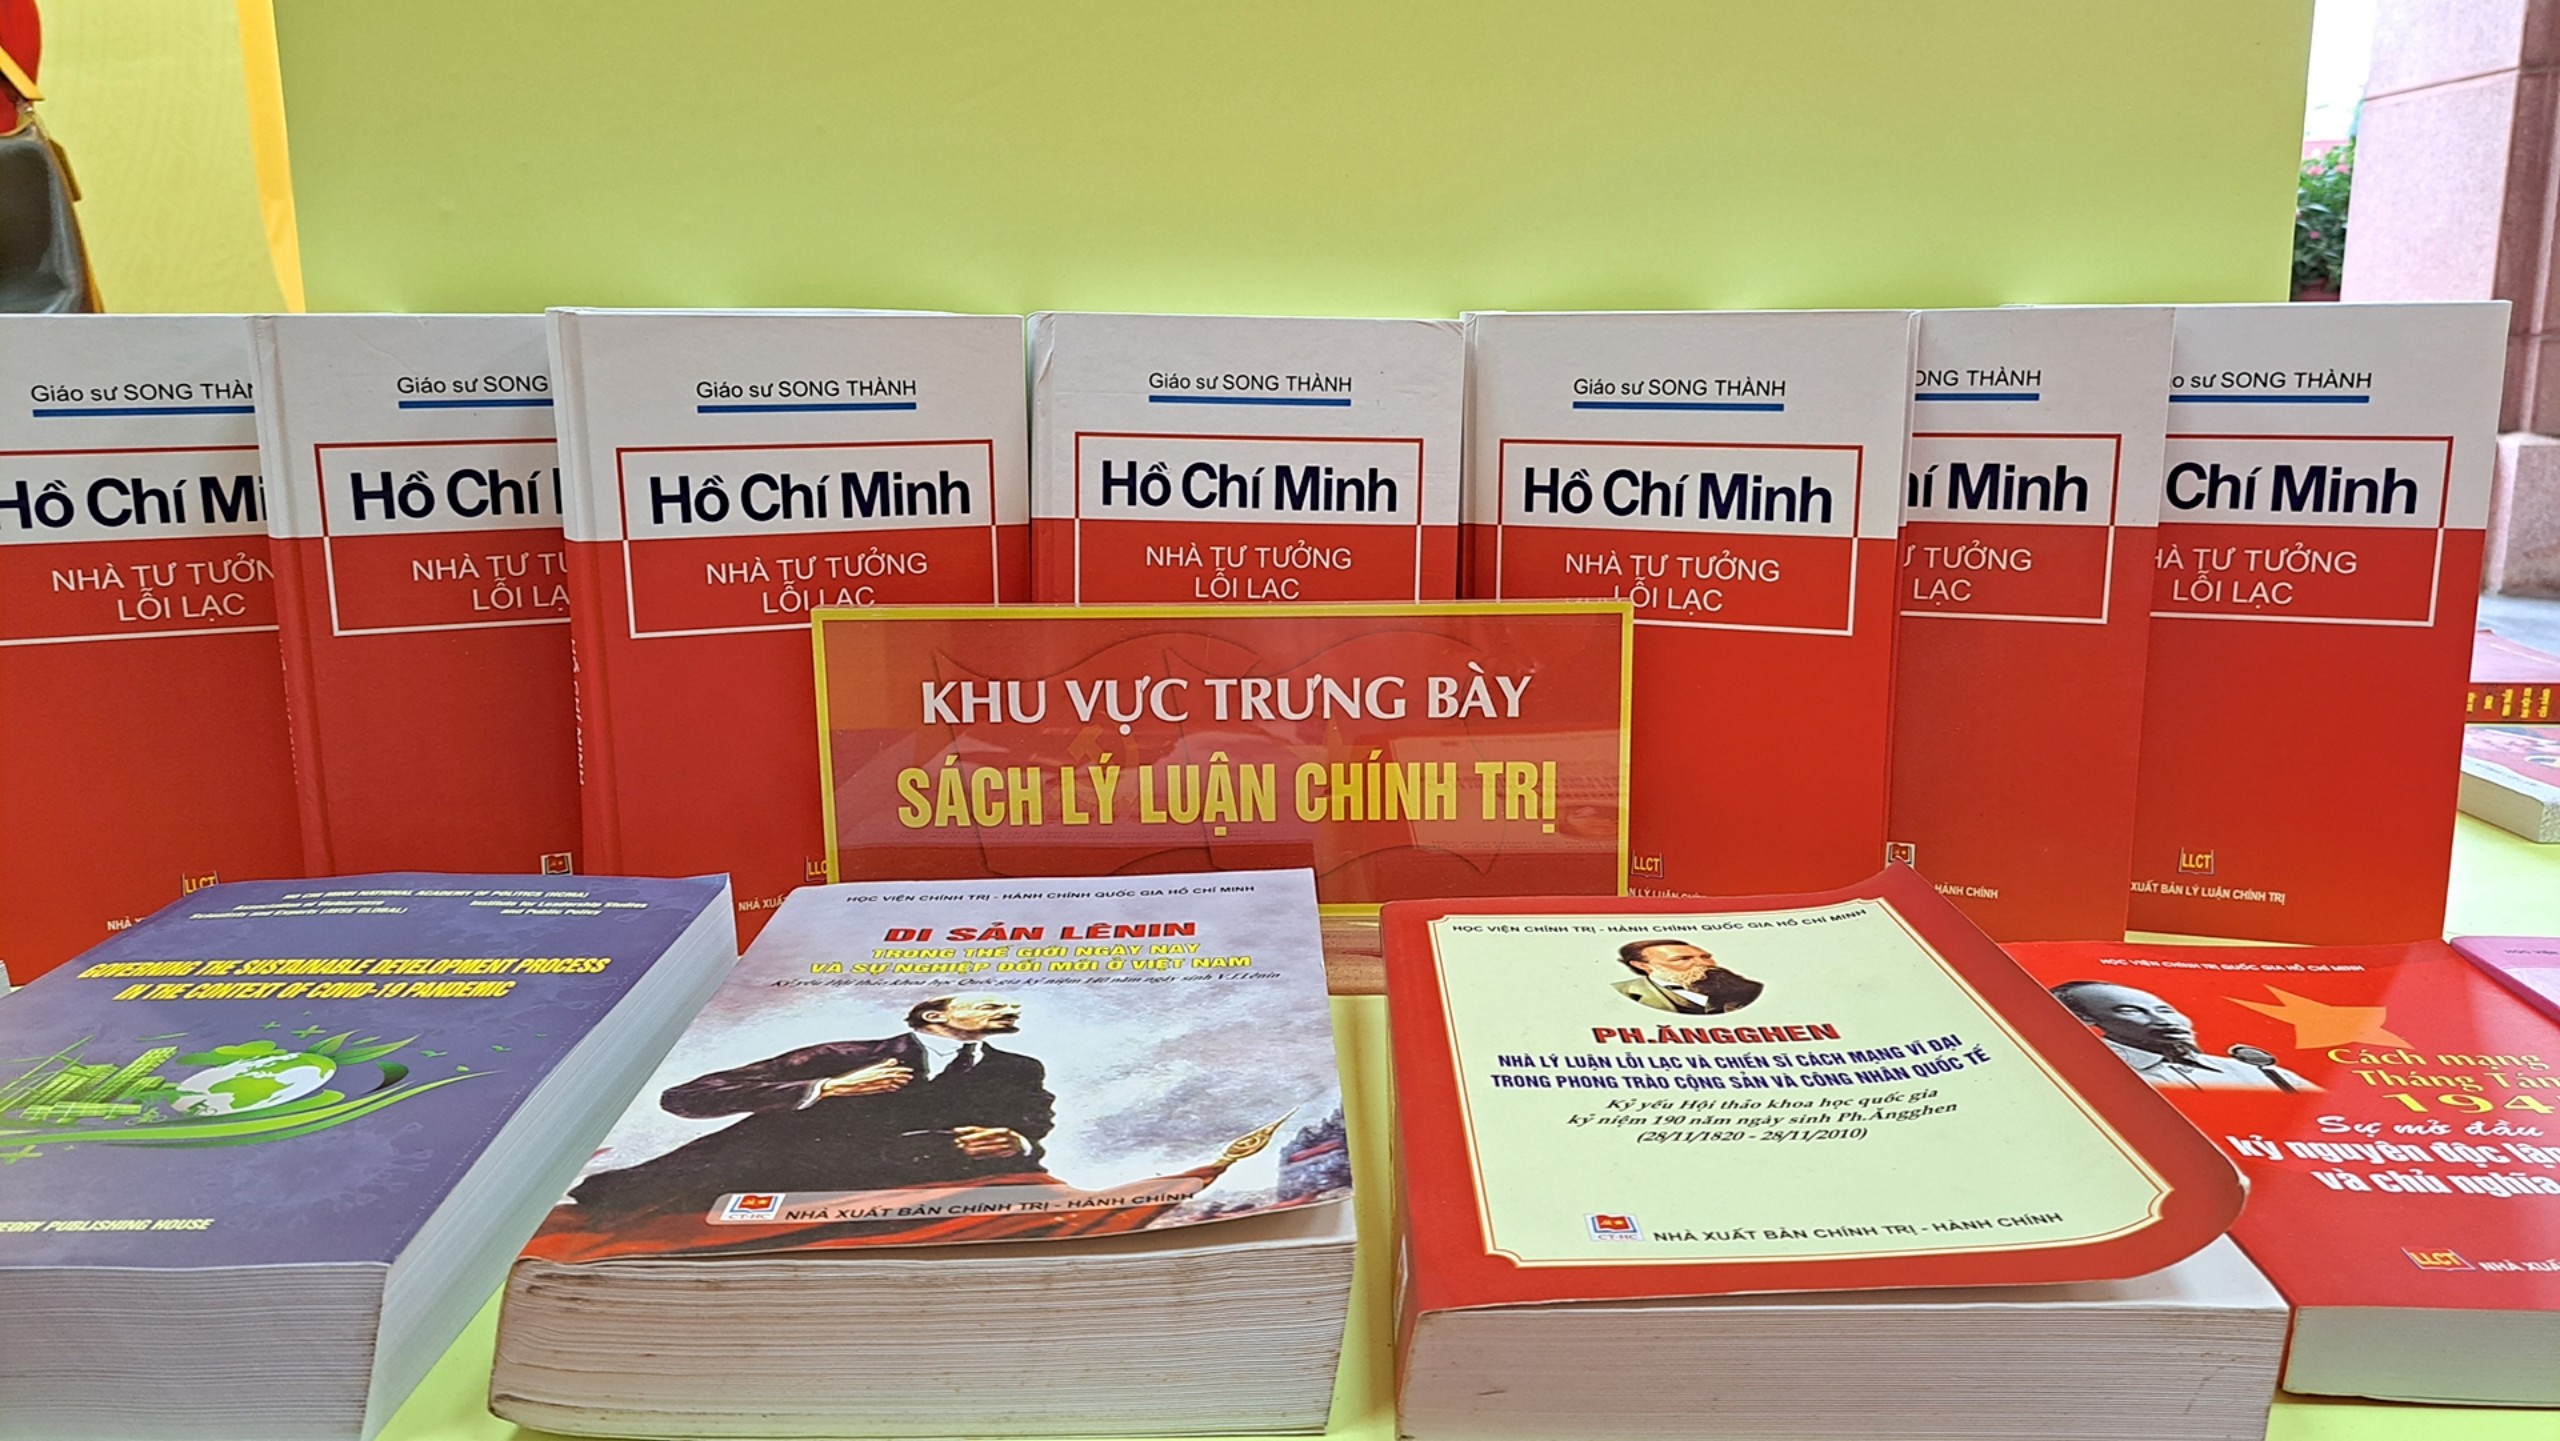 Trưng bày 2.500 cuốn sách, tư liệu, hiện vật nhân dịp Kỷ niệm 70 năm ngày truyền thống ngành Xuất bản Việt Nam - 5